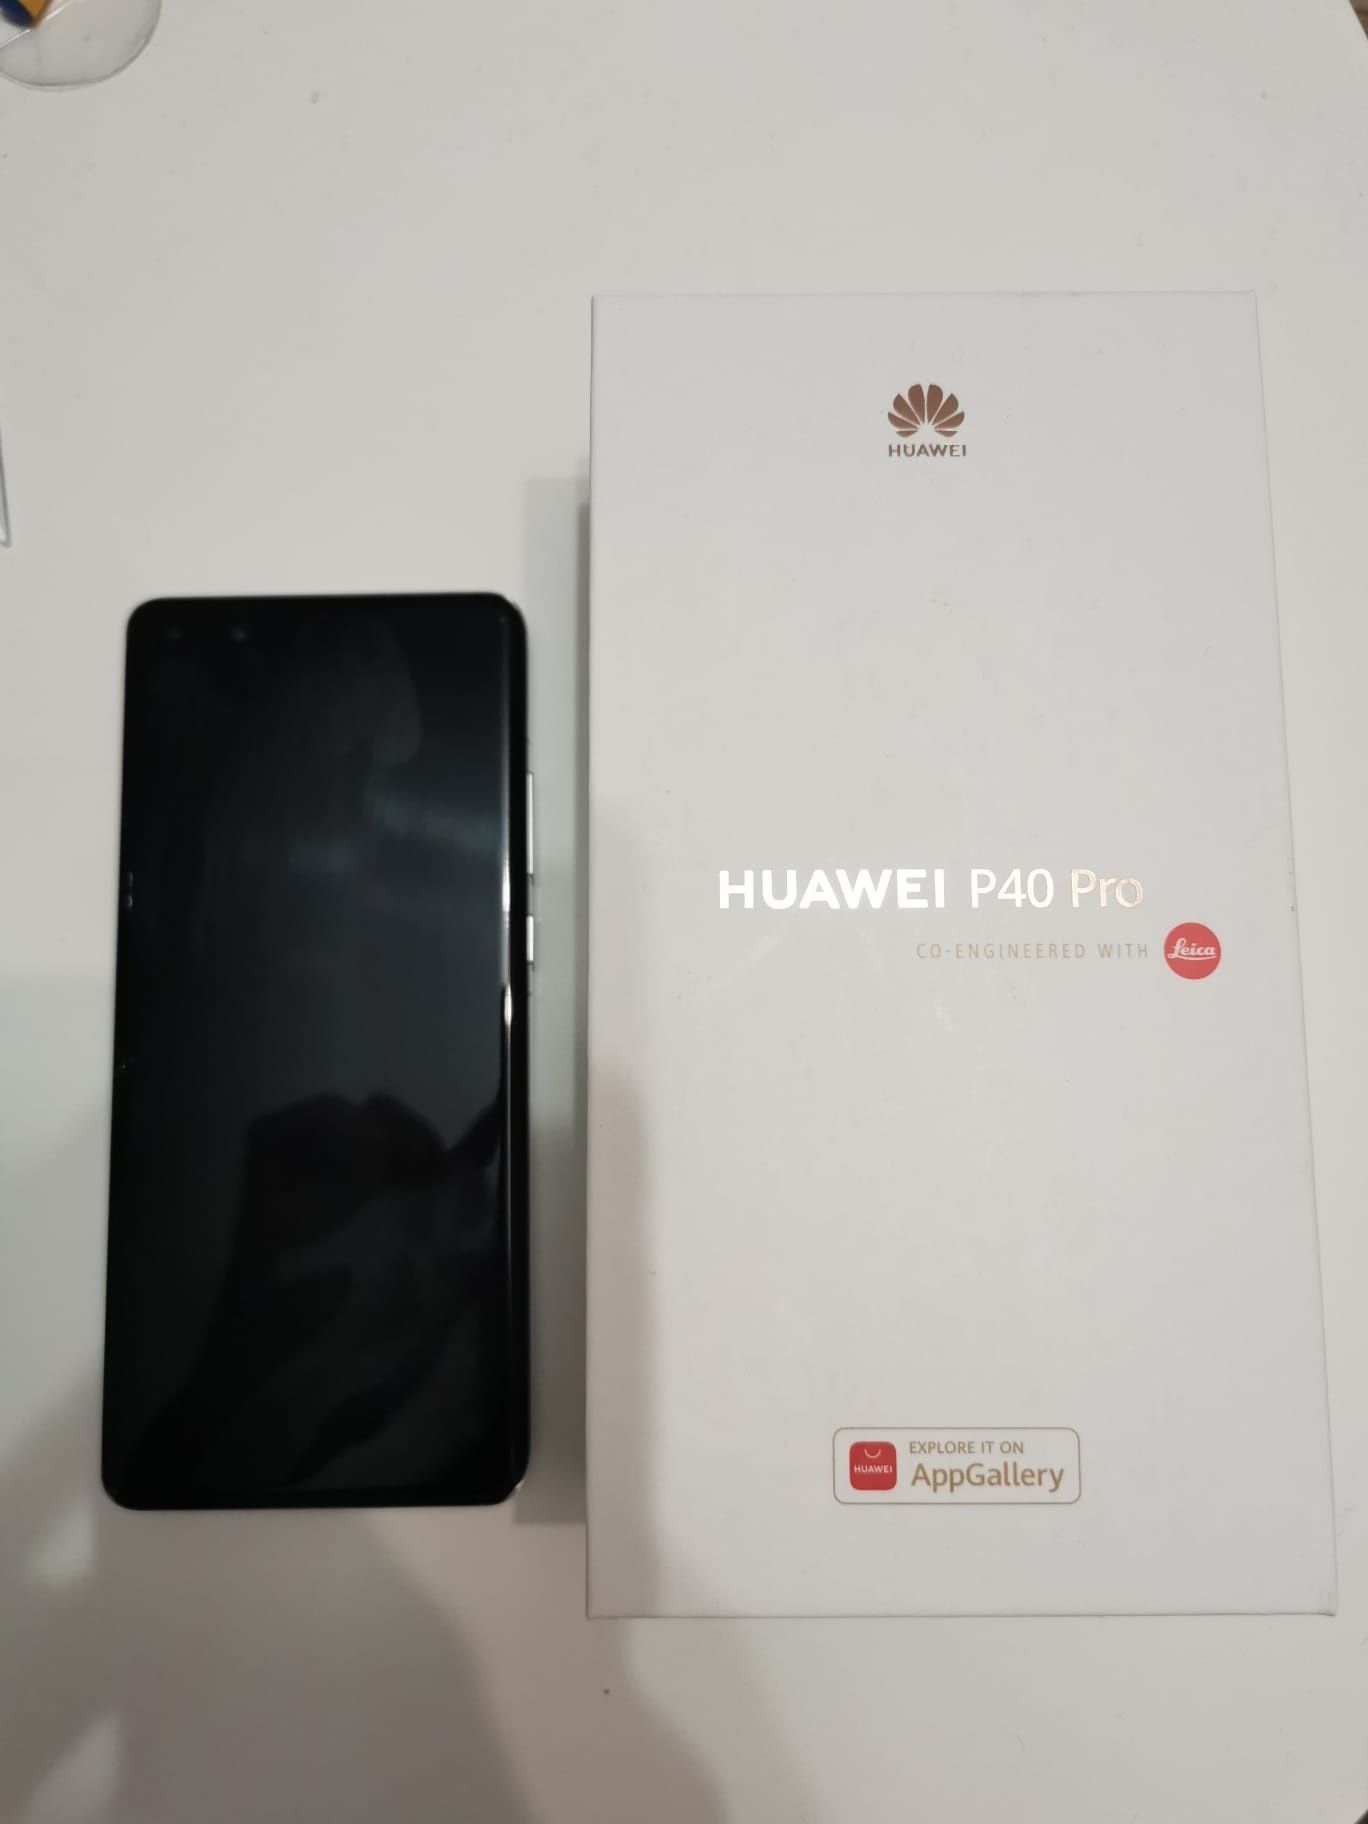 De vânzare pachet Huawei P40 Pro